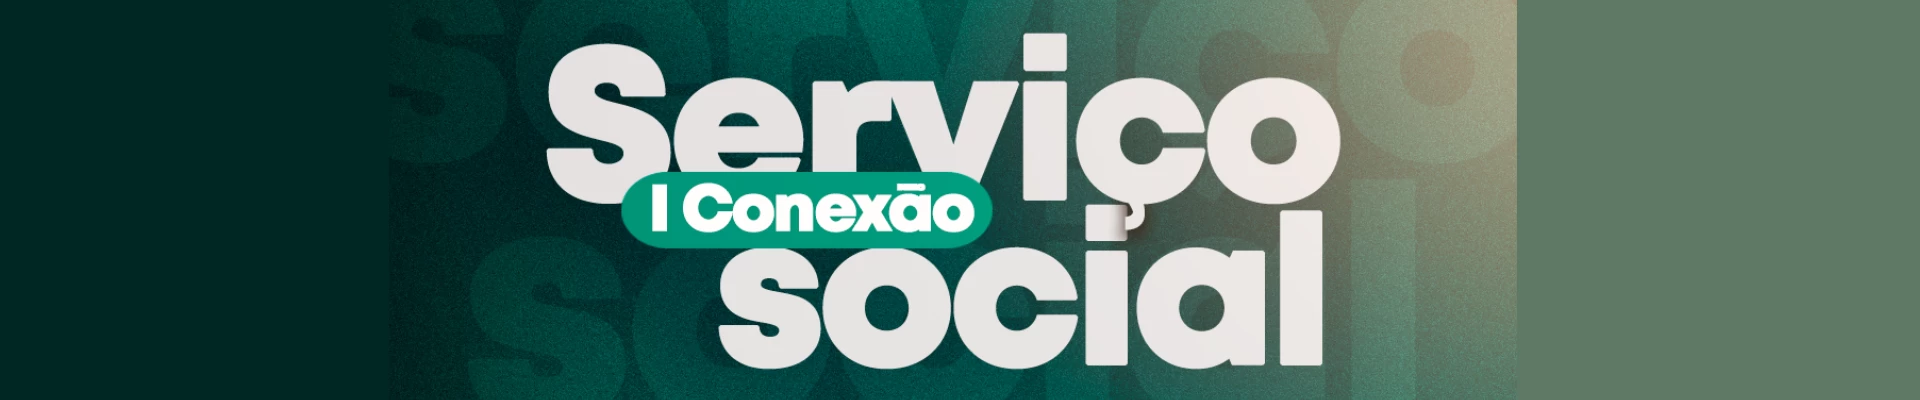 I Conexão Serviço Social - A construção da cultura identitária do Brasil